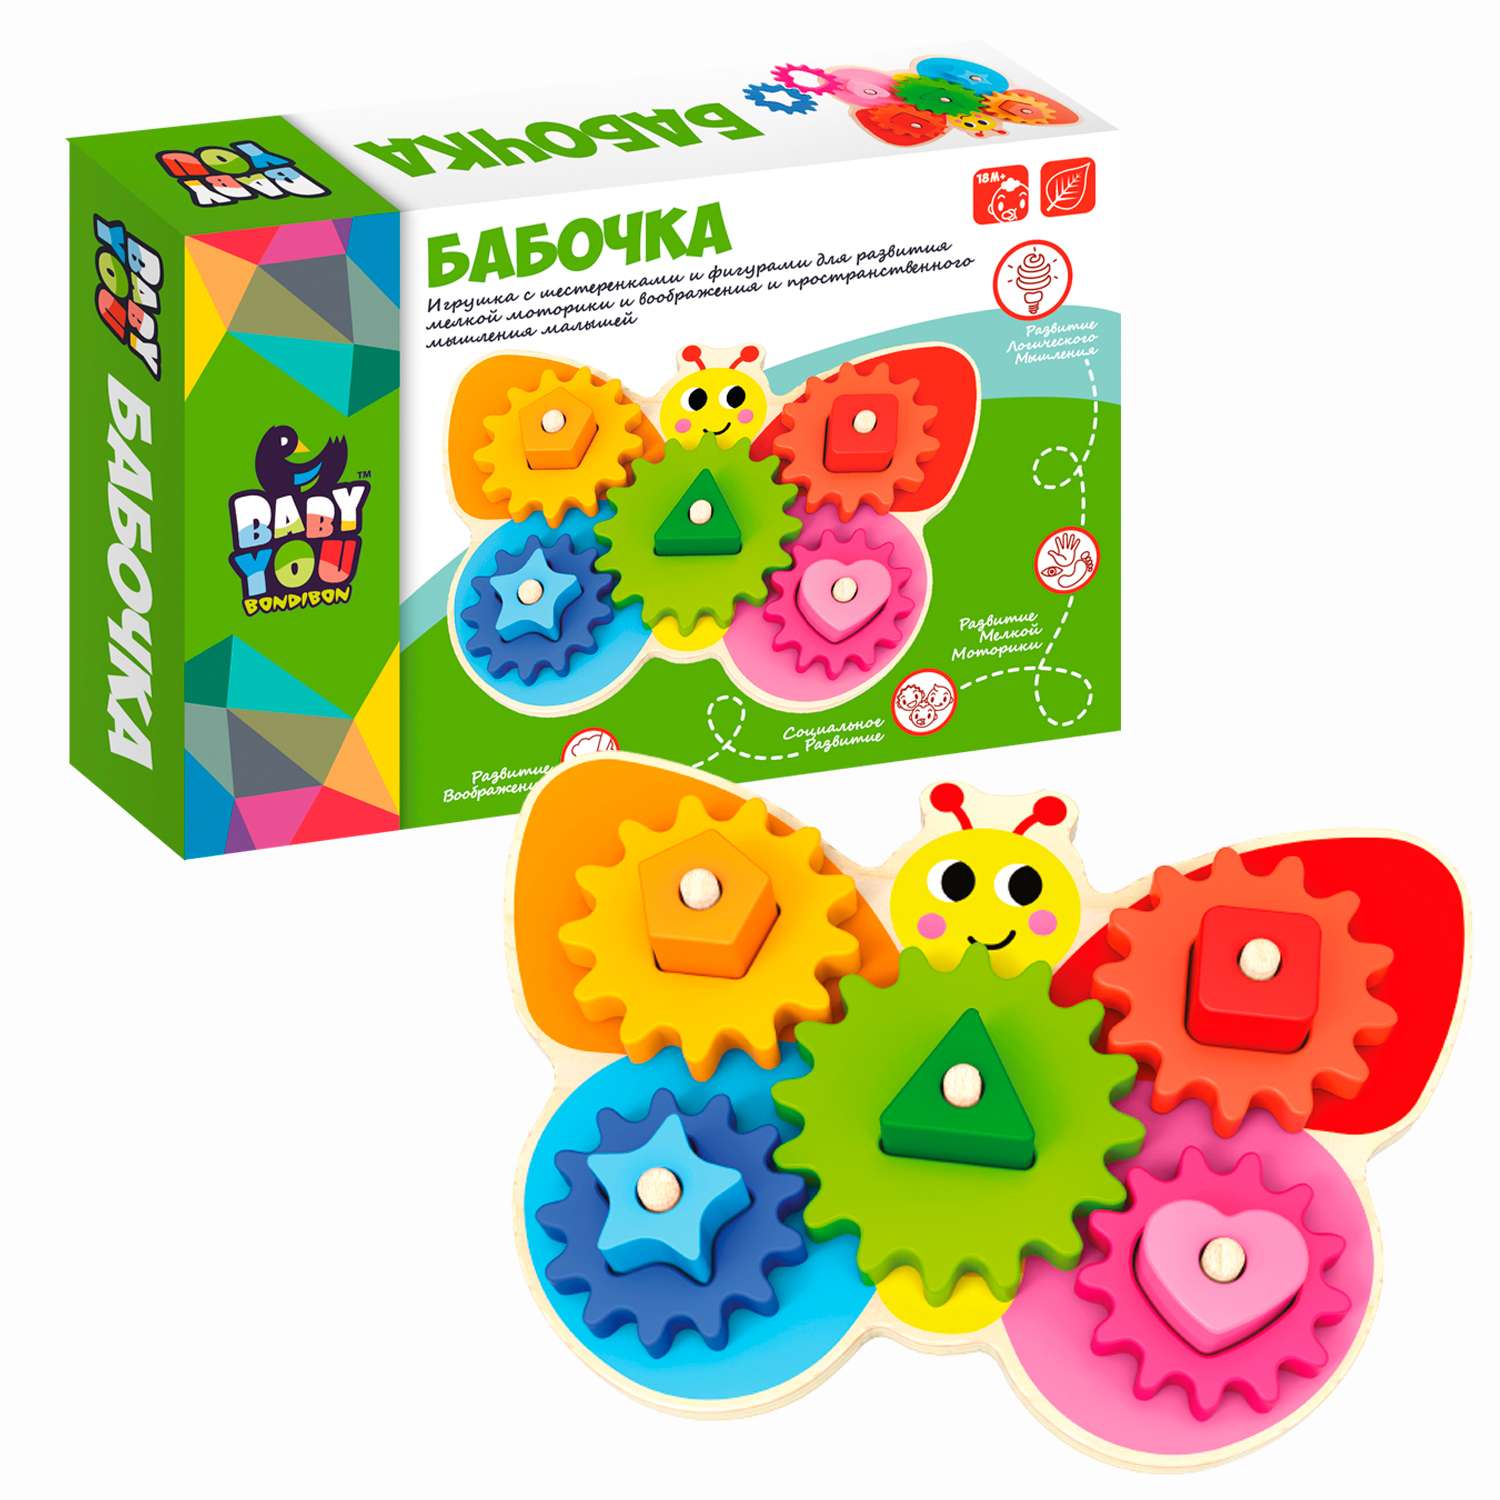 Развивающая игрушка BONDIBON Бабочка с шестеренками и фигурами серия Baby You - фото 1